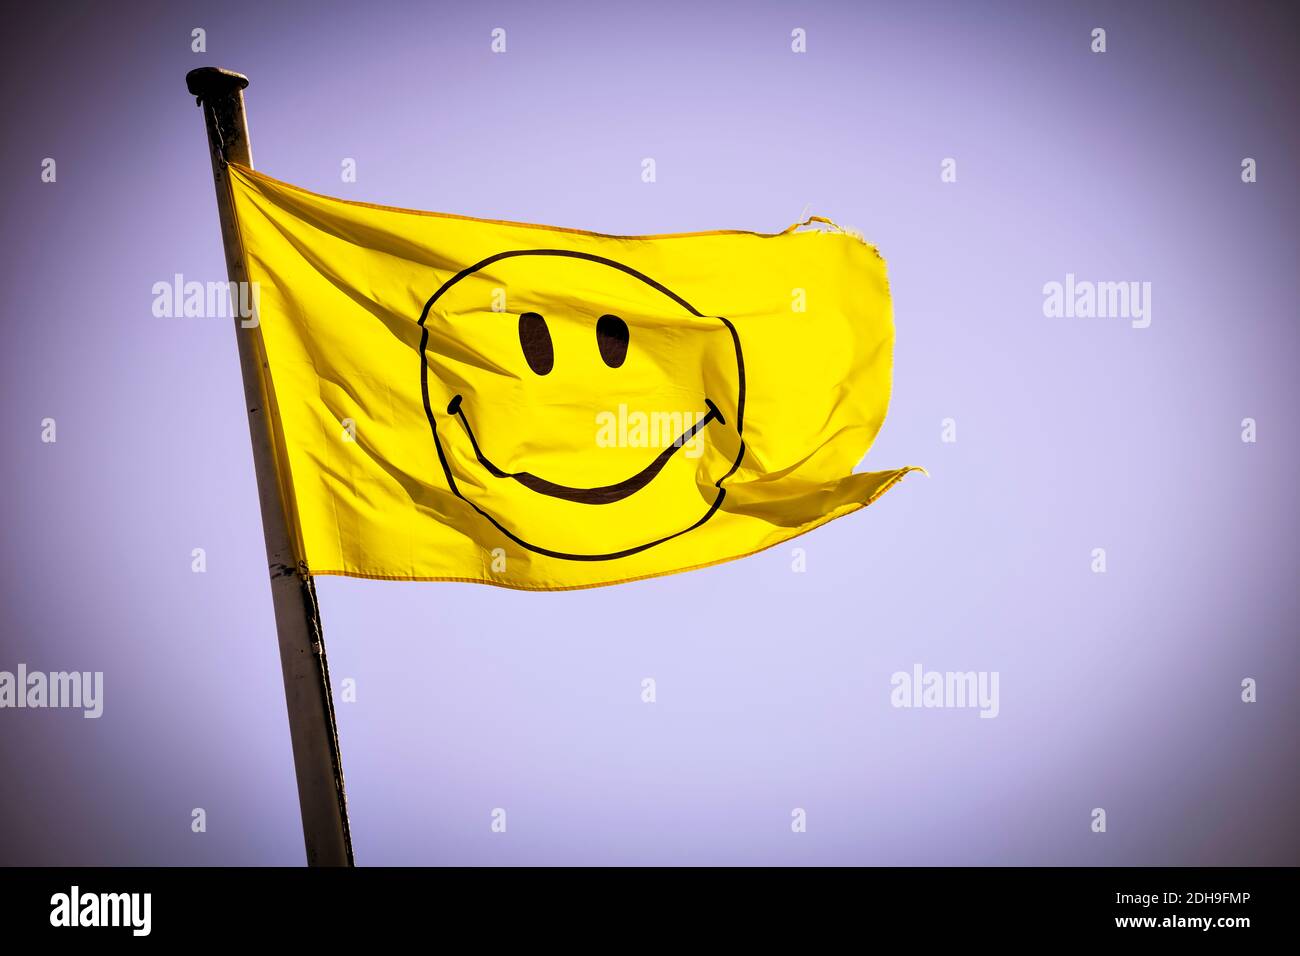 Smiley Bandera en Hamburgo, Alemania Foto de stock